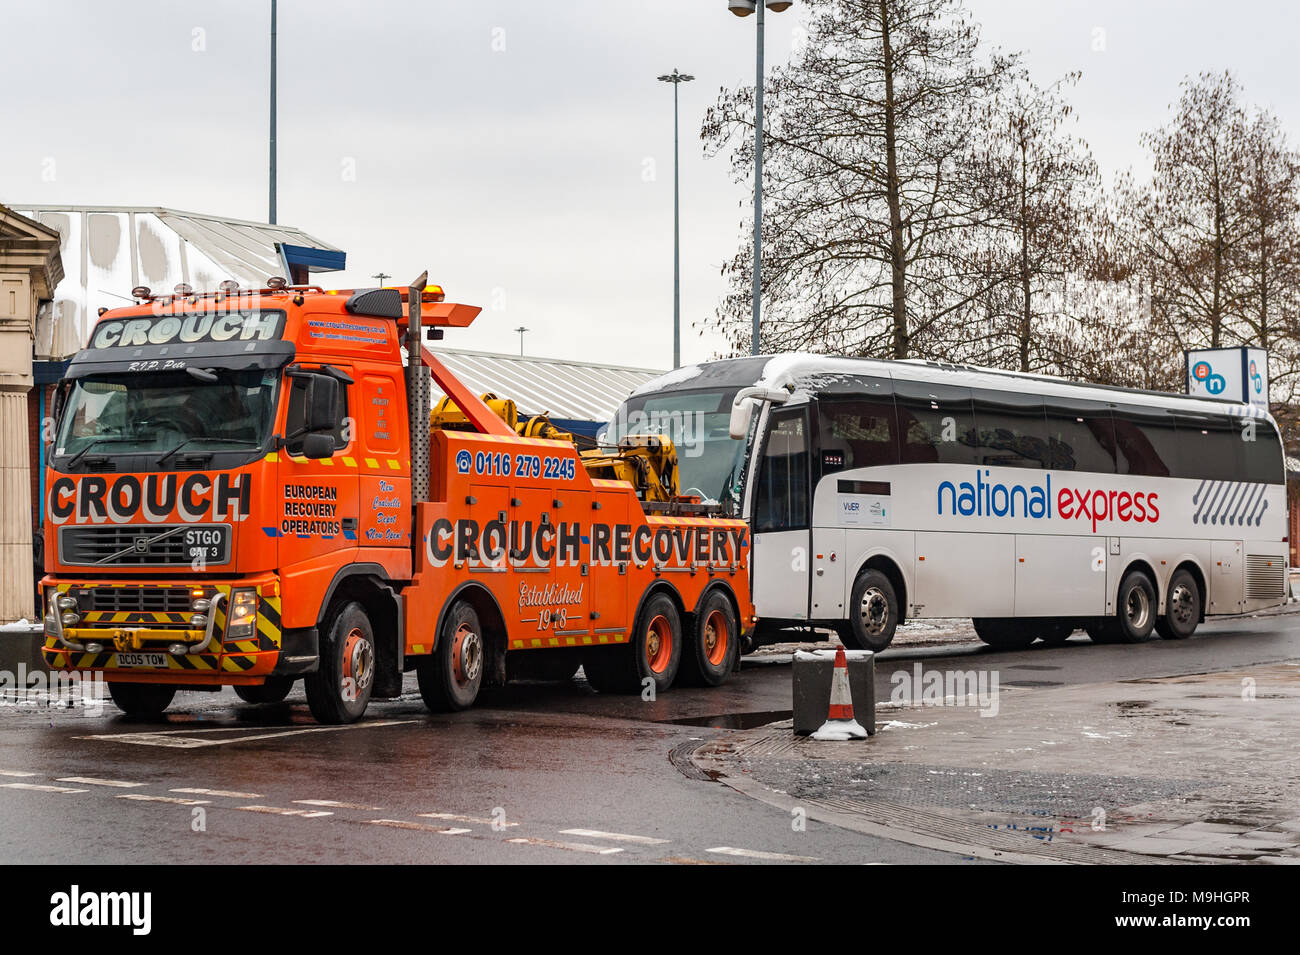 Schwertransporte Abschleppwagen abschleppen eines National Express Coach ab Pool Meadow Busbahnhof, Fairfax Street, Coventry, West Midlands, UK. Stockfoto